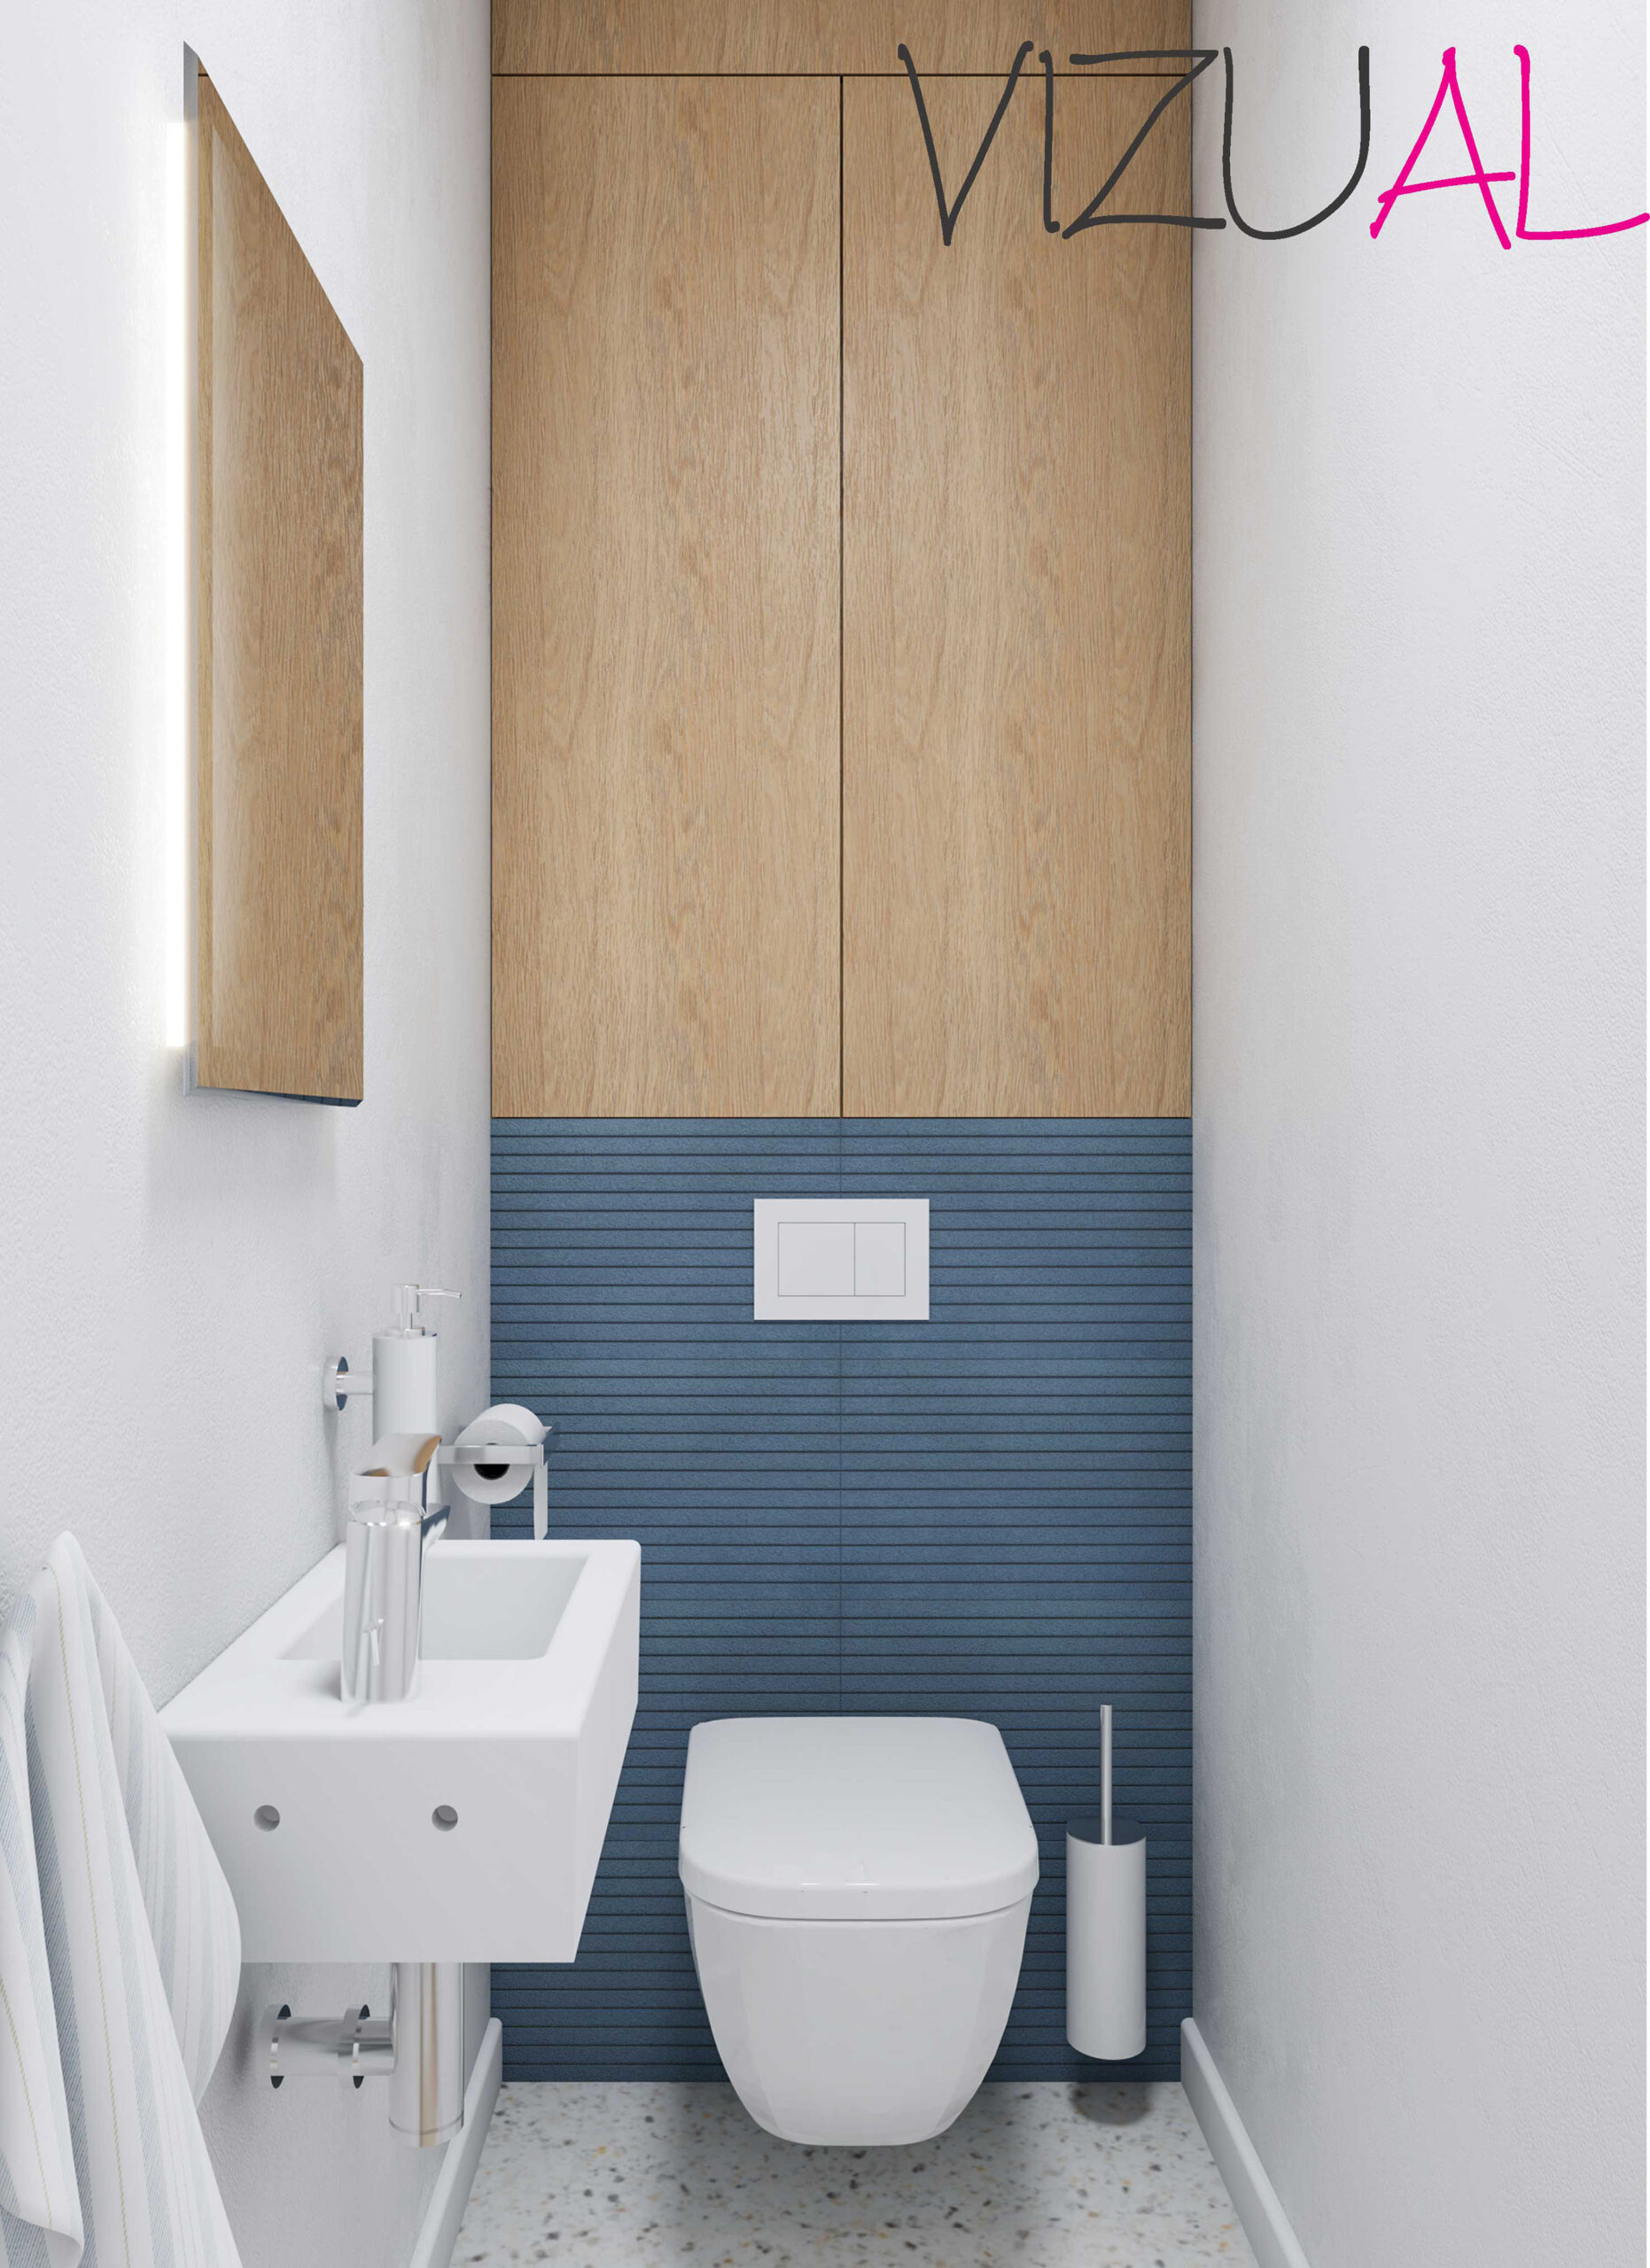 Vizuál záchodu s malým hranatým umývadlom, zrkadlom a jednou farebnou stenou